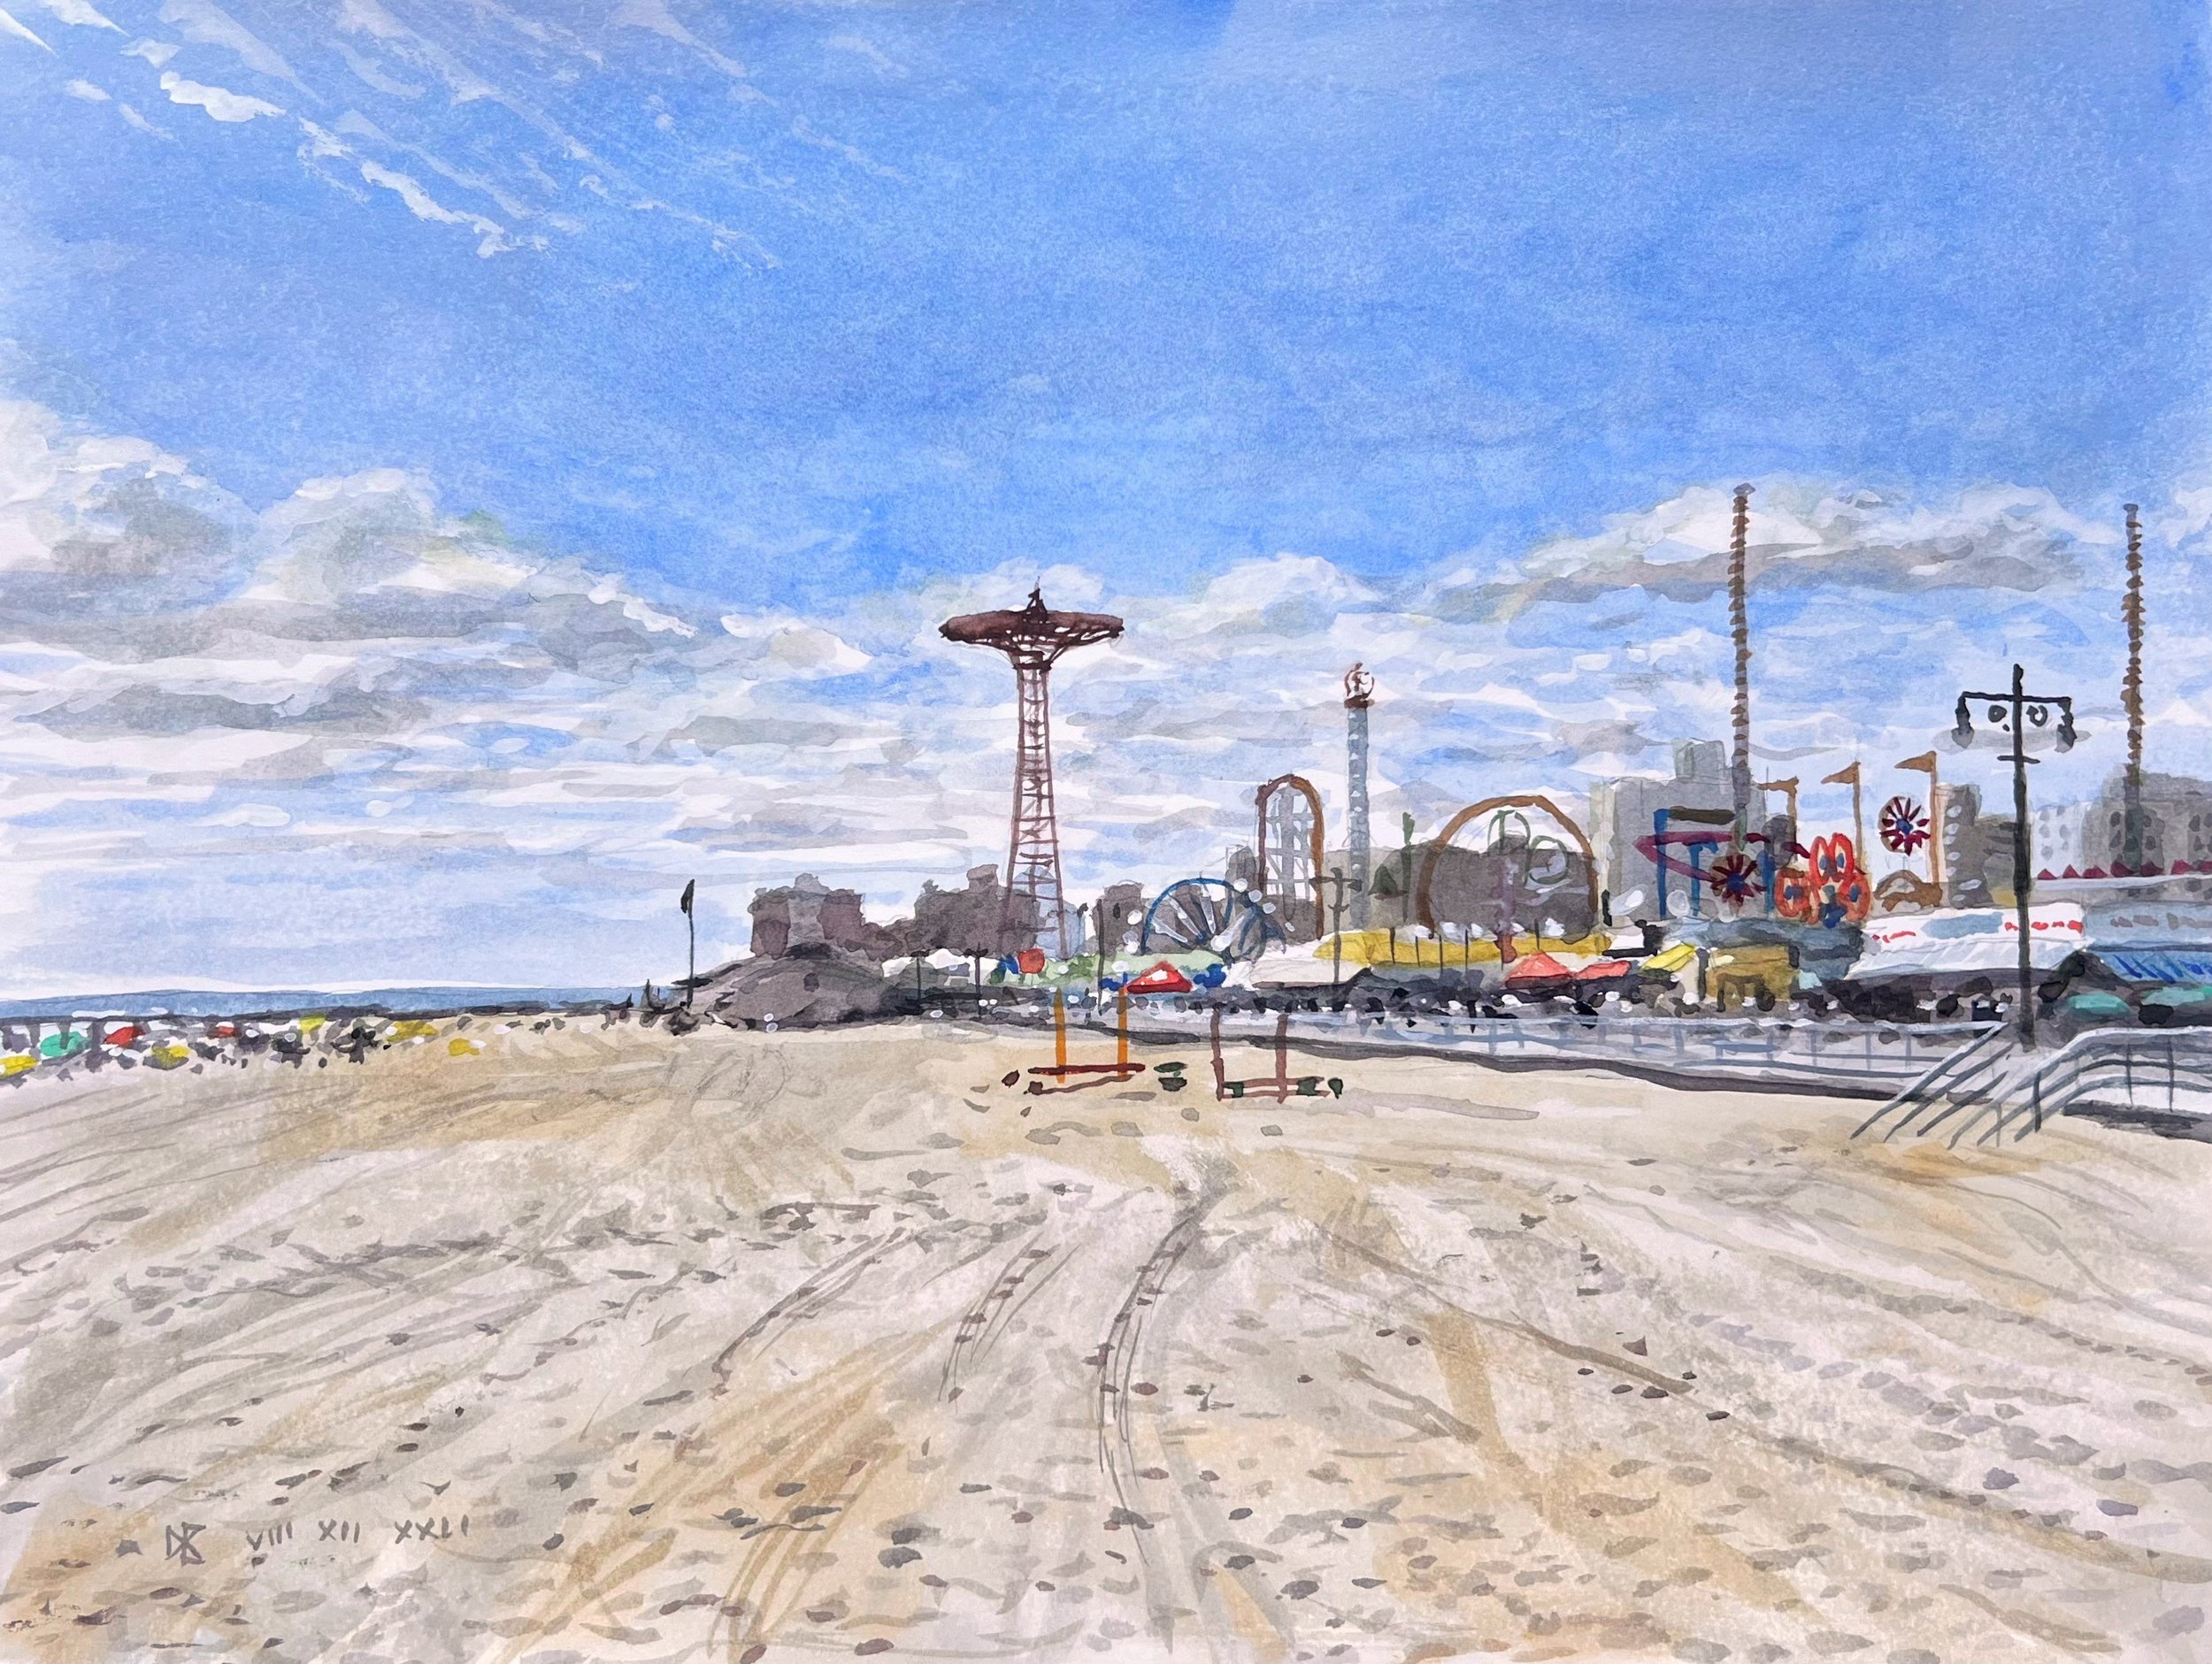 Coney Island Beach and Boardwalk